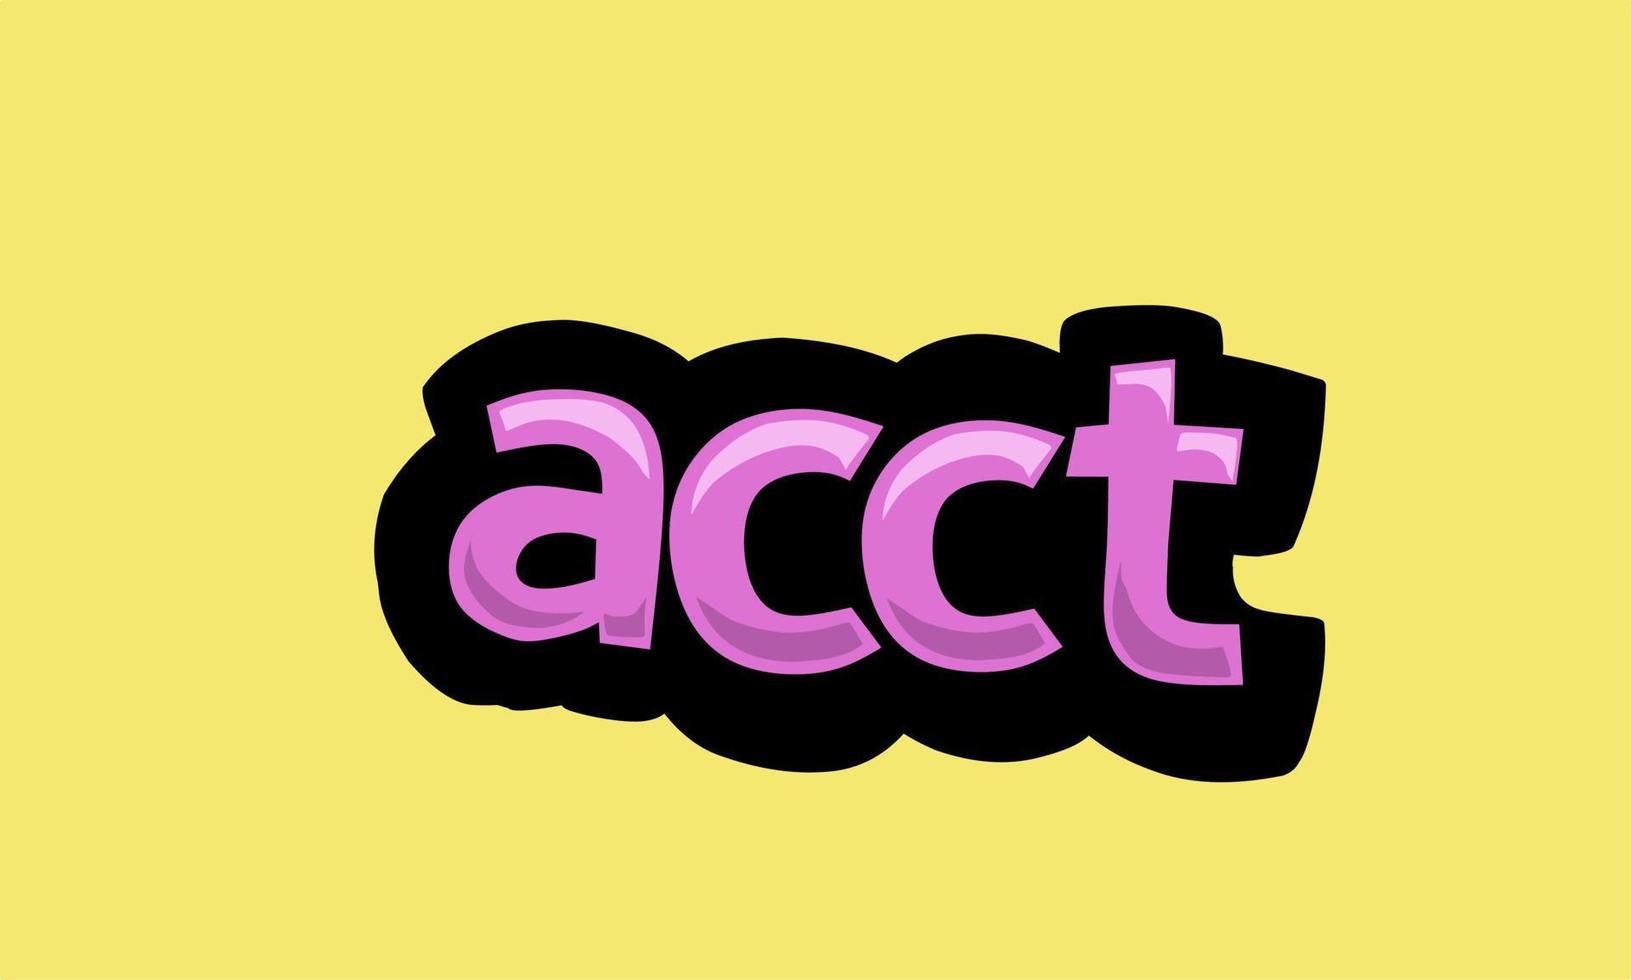 diseño de vector de escritura acct sobre un fondo amarillo